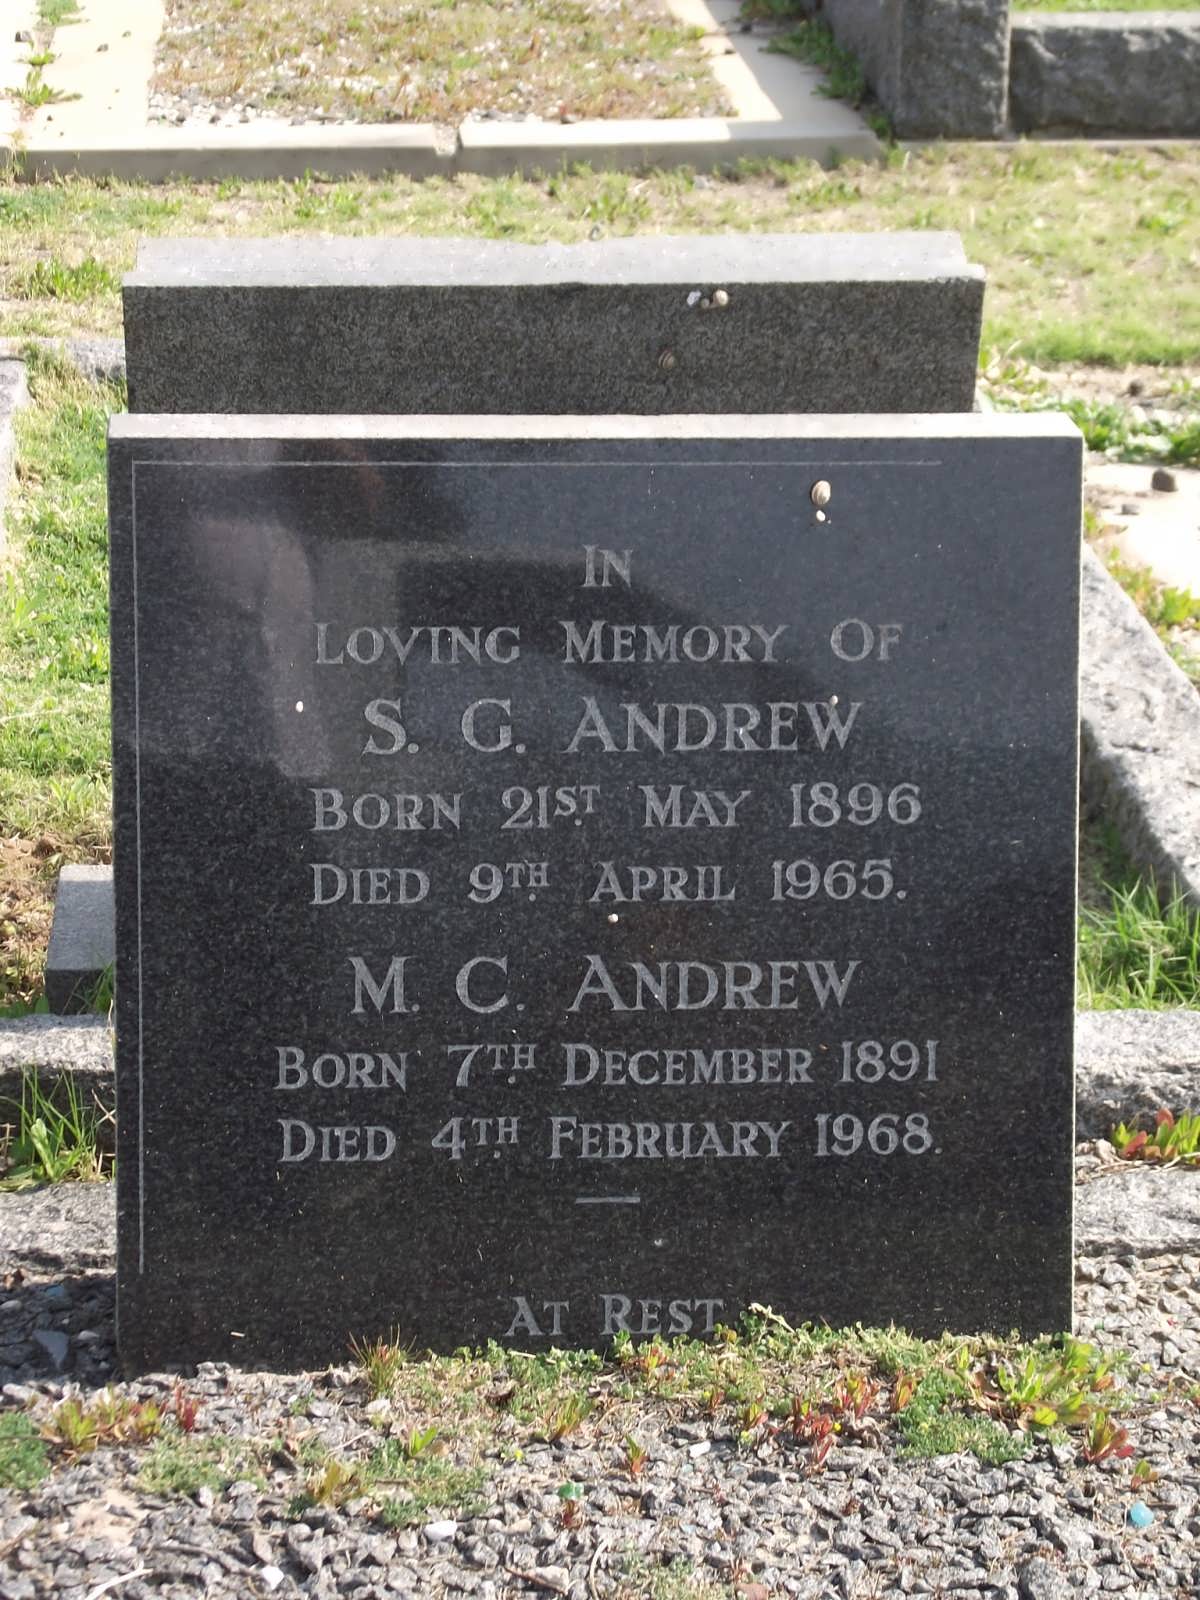 ANDREW S.G. 1896-1965 & M.C. 1891-1968